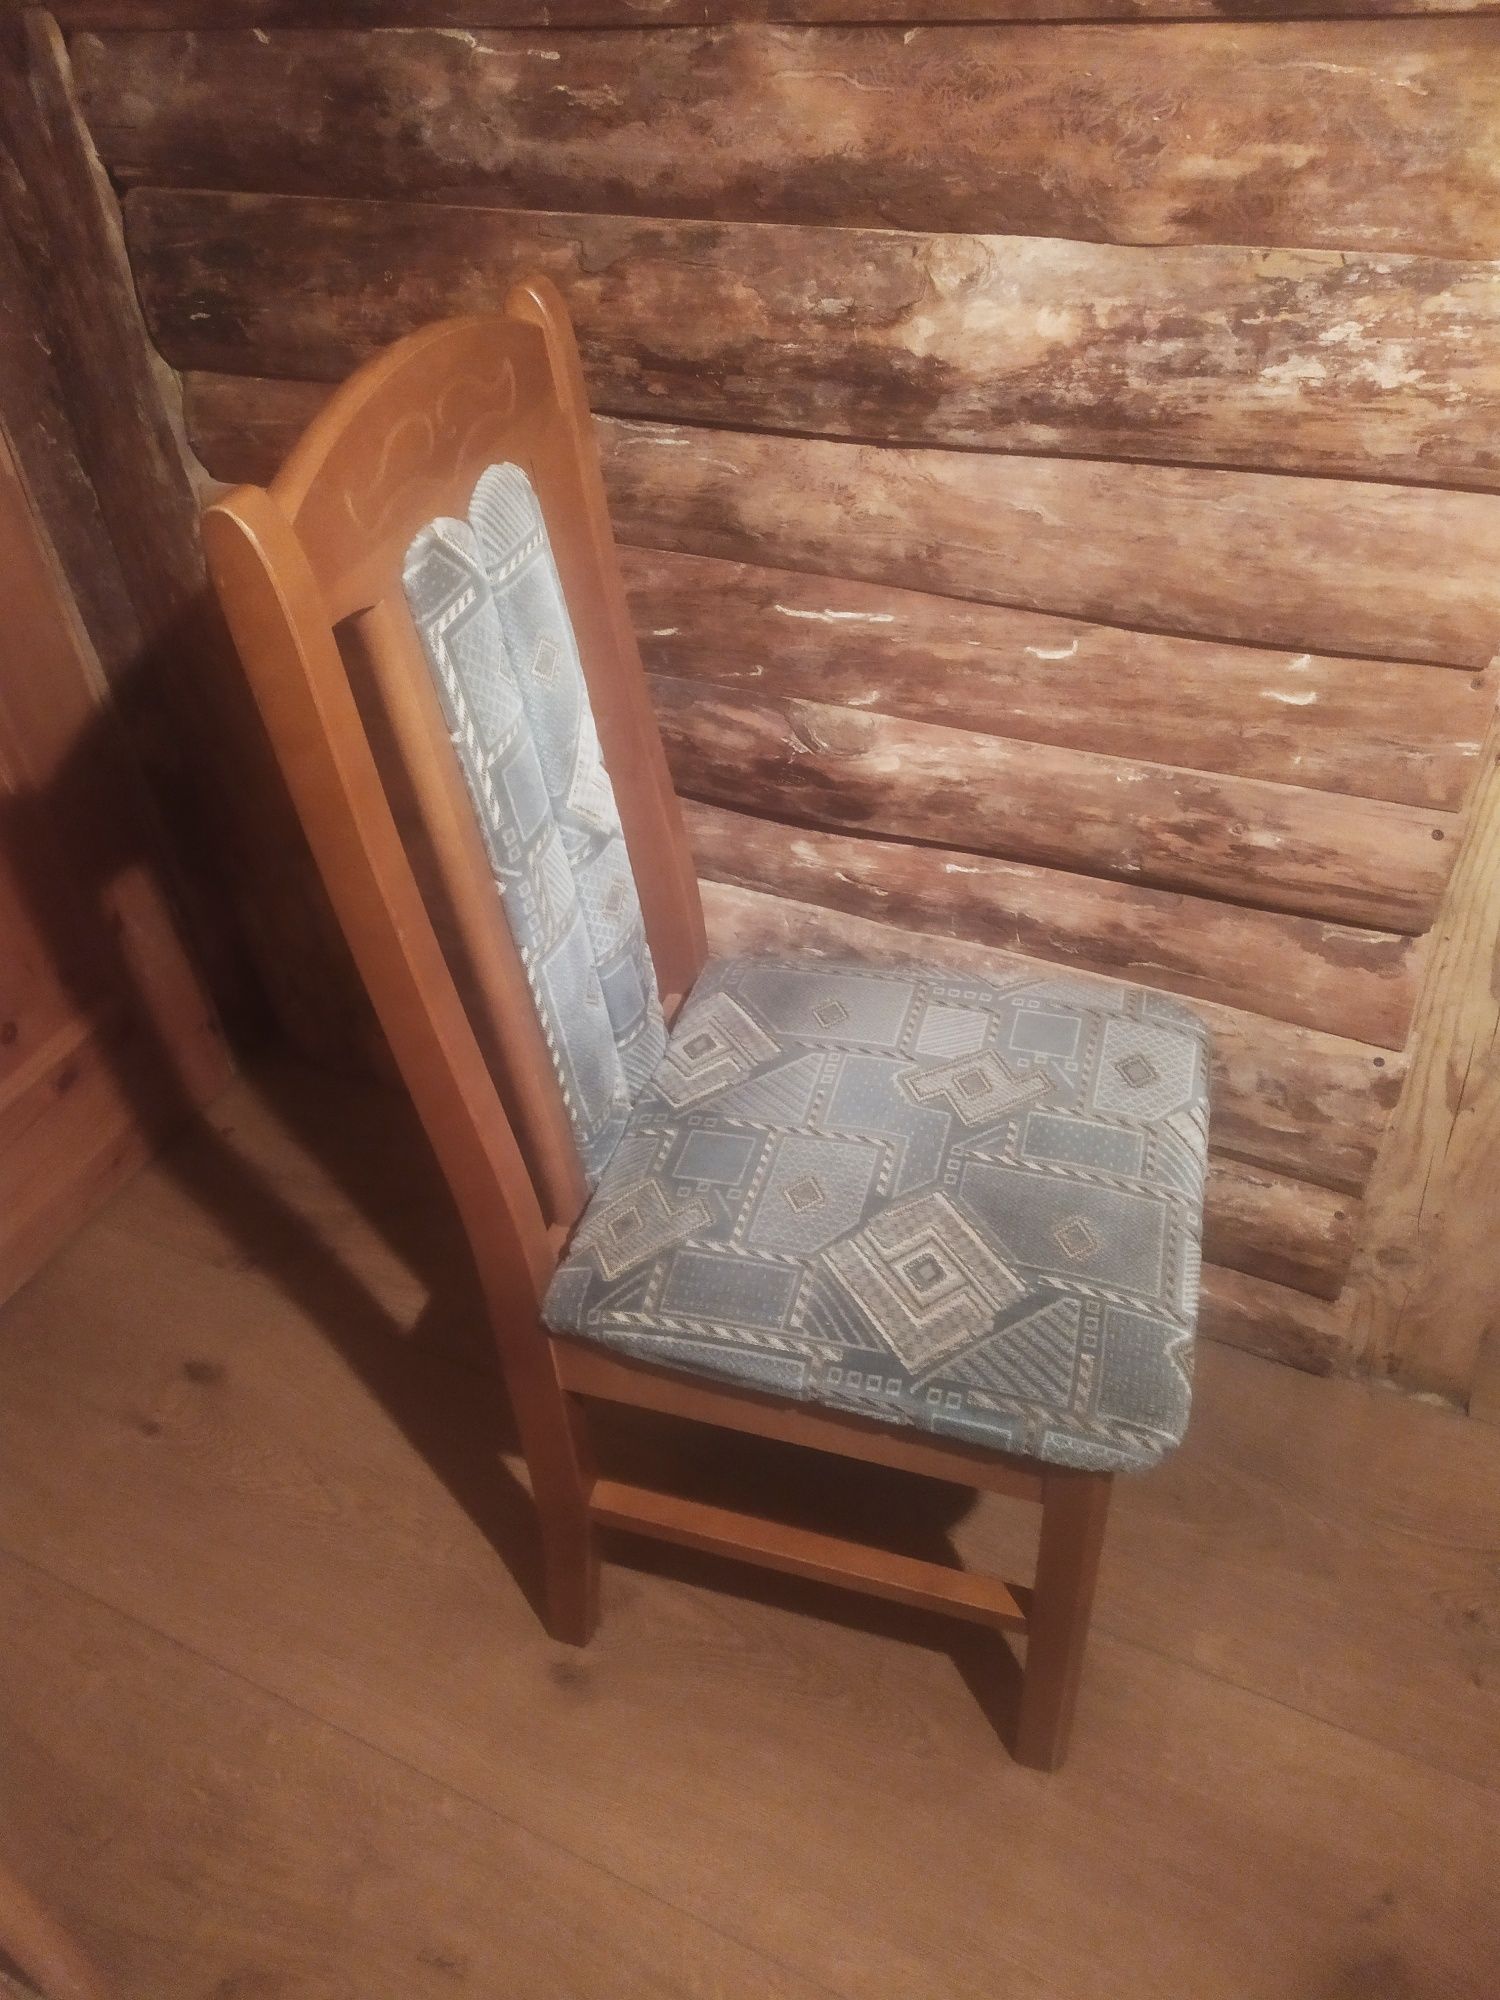 Krzesło drewniane rzeźbione fotel